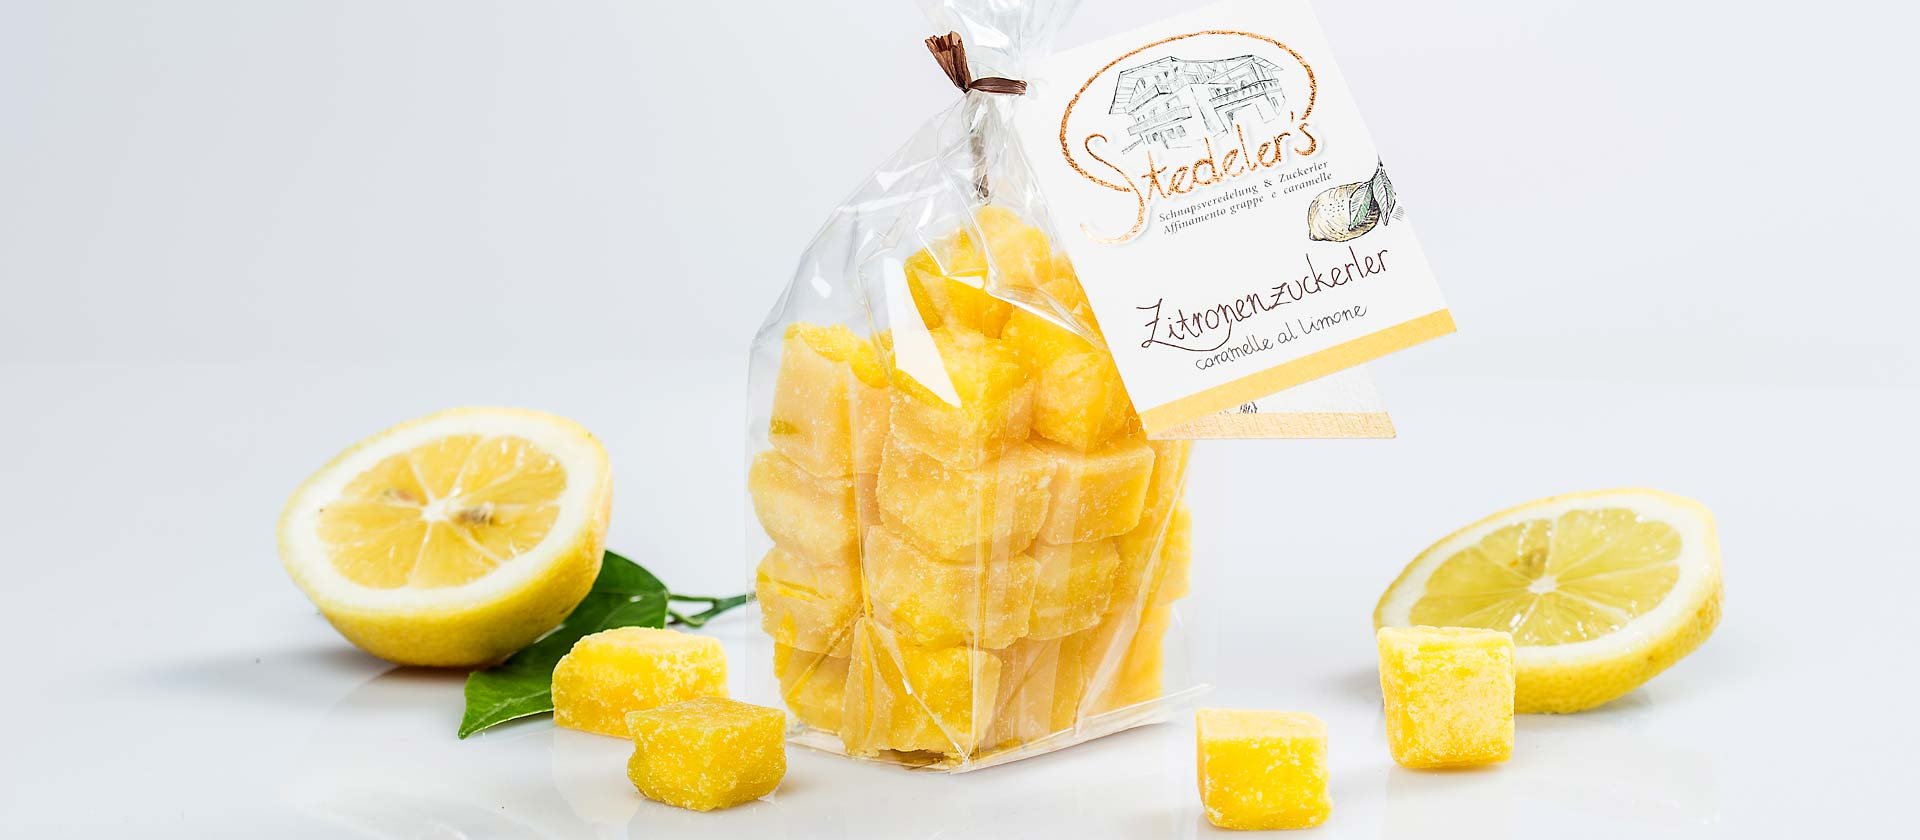 Caramelle al limone dell'Alto Adige